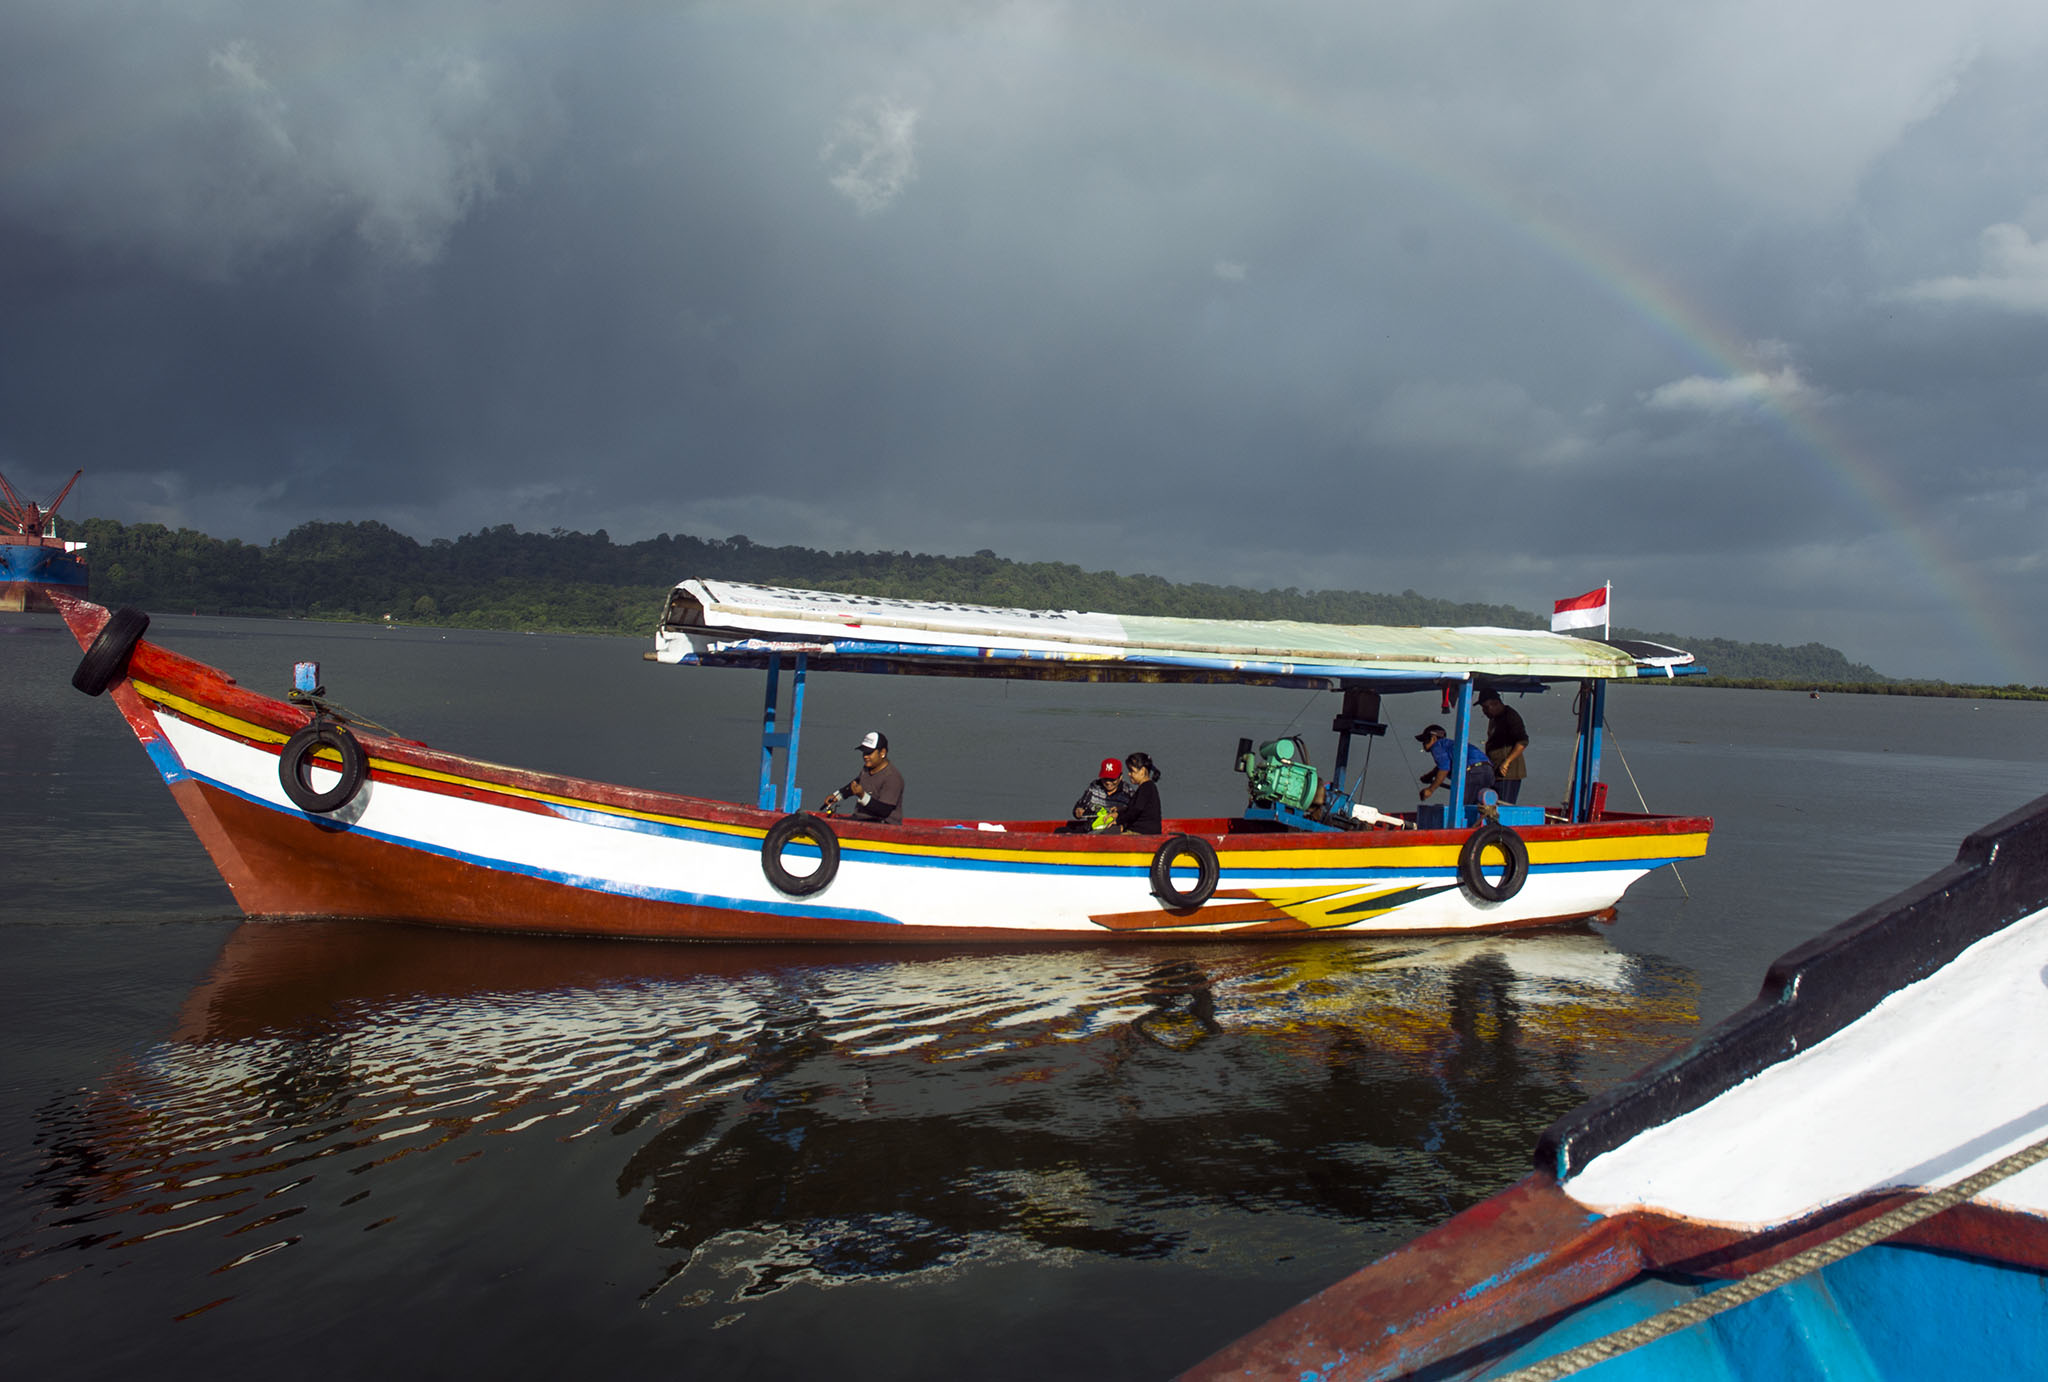 Memulai perjalanan dari Dermaga Sleko, Cilacap menuju kawasan mangrove Segara Anakan, Kampung Laut, Cilacap. Foto : L Darmawan